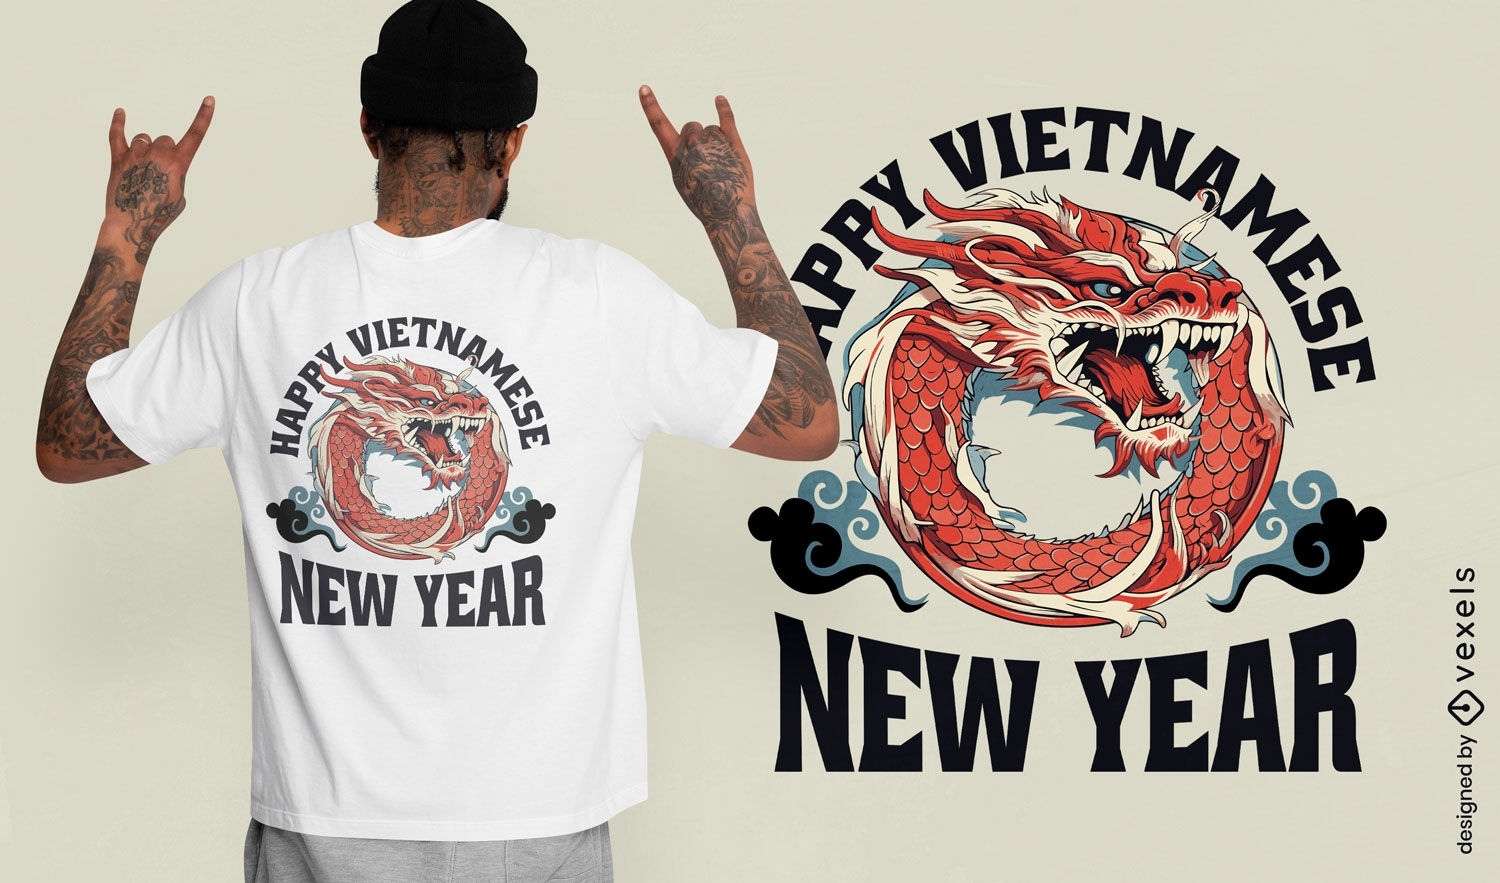 Feliz ano novo vietnamita com design de camiseta com drag?o